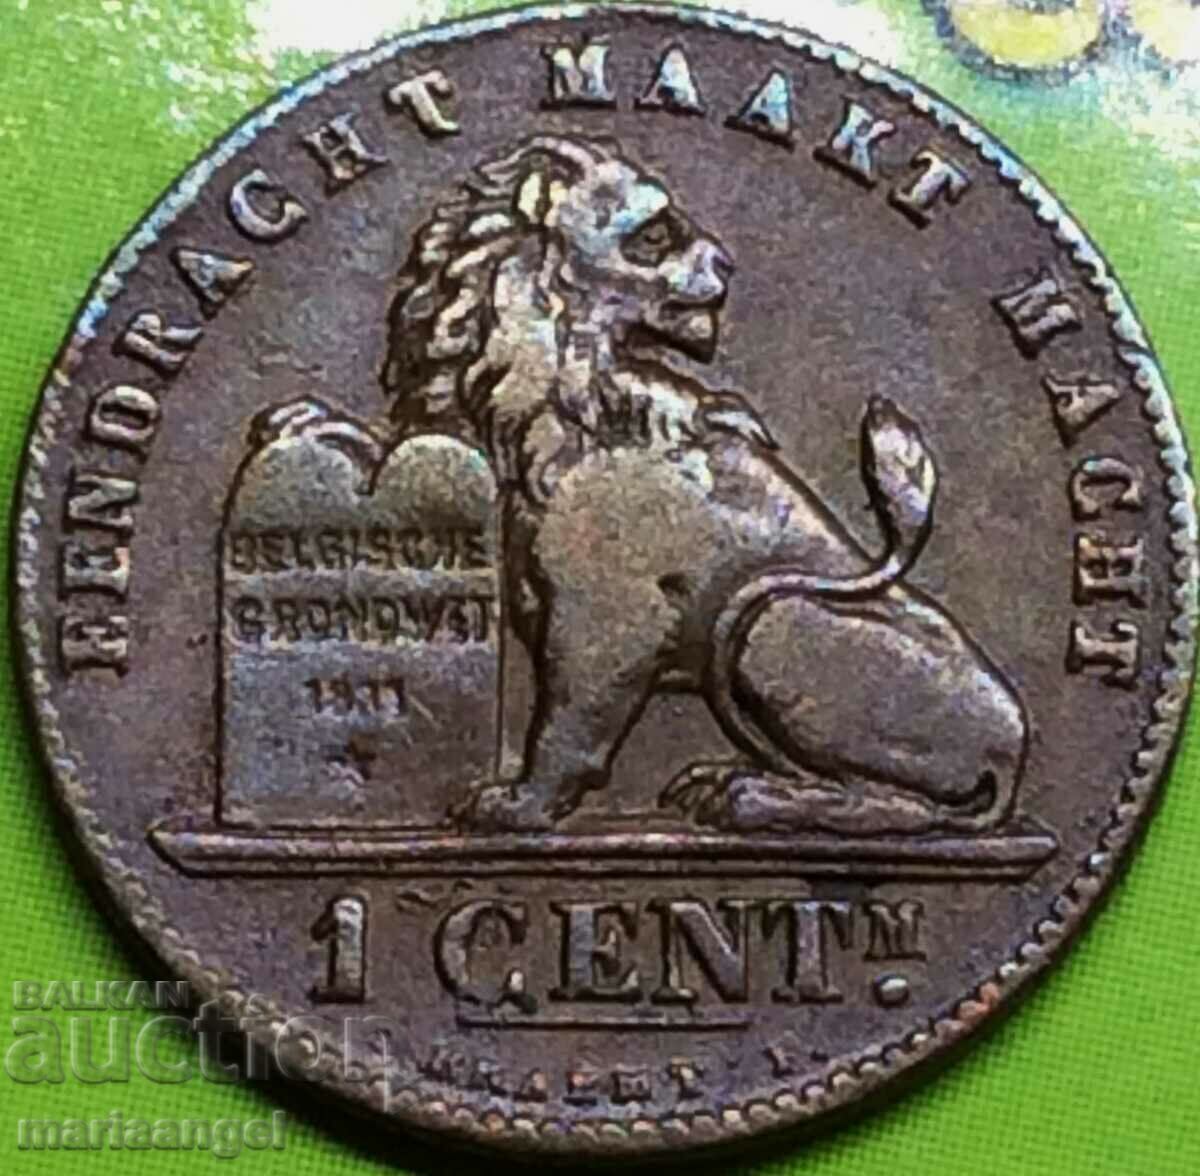 Belgium 1 cent 1894 - quite rare